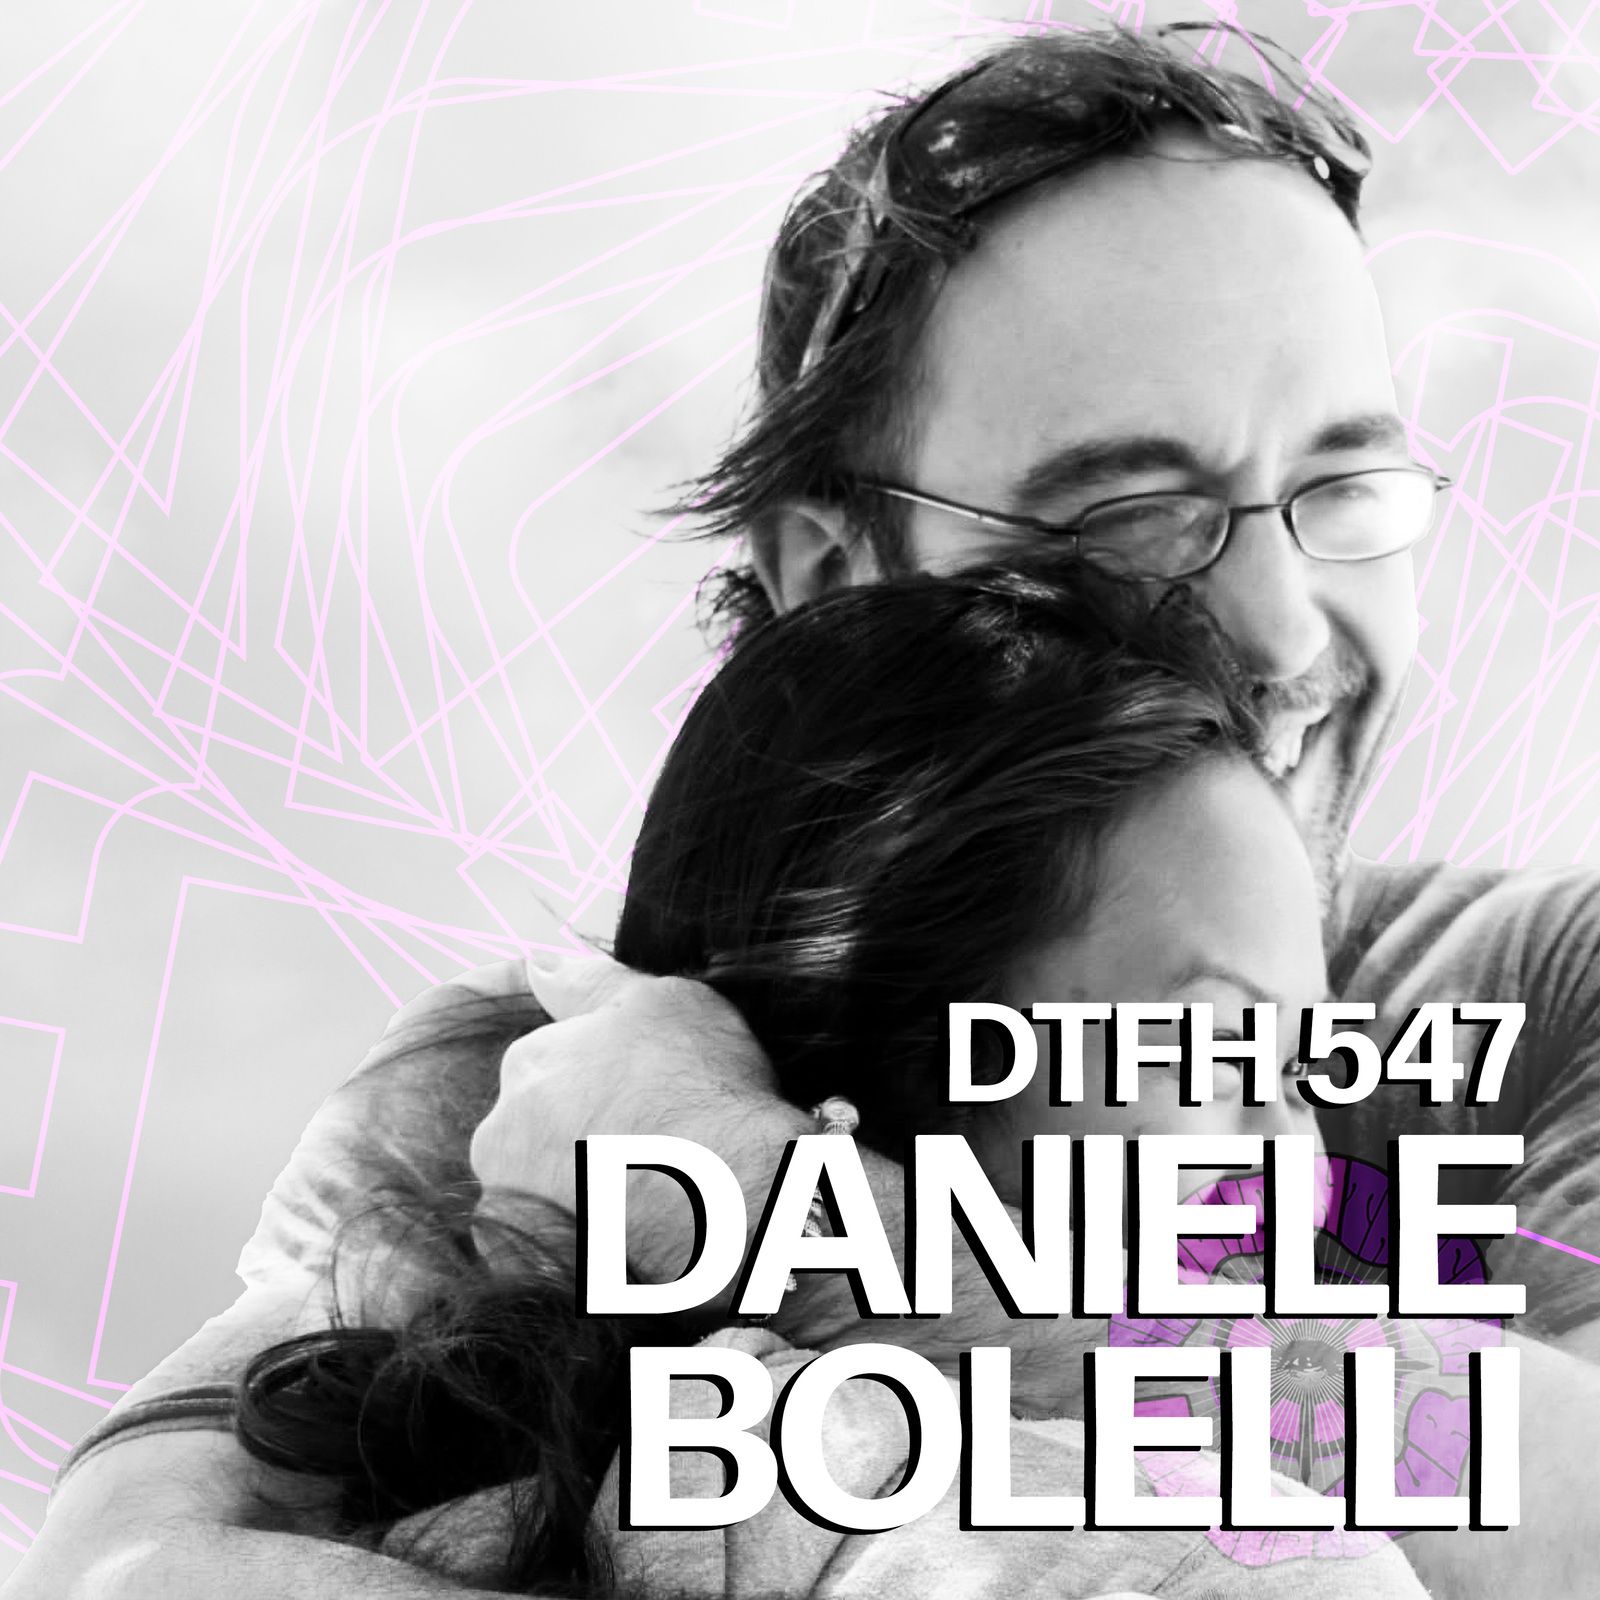 551: Daniele Bolelli